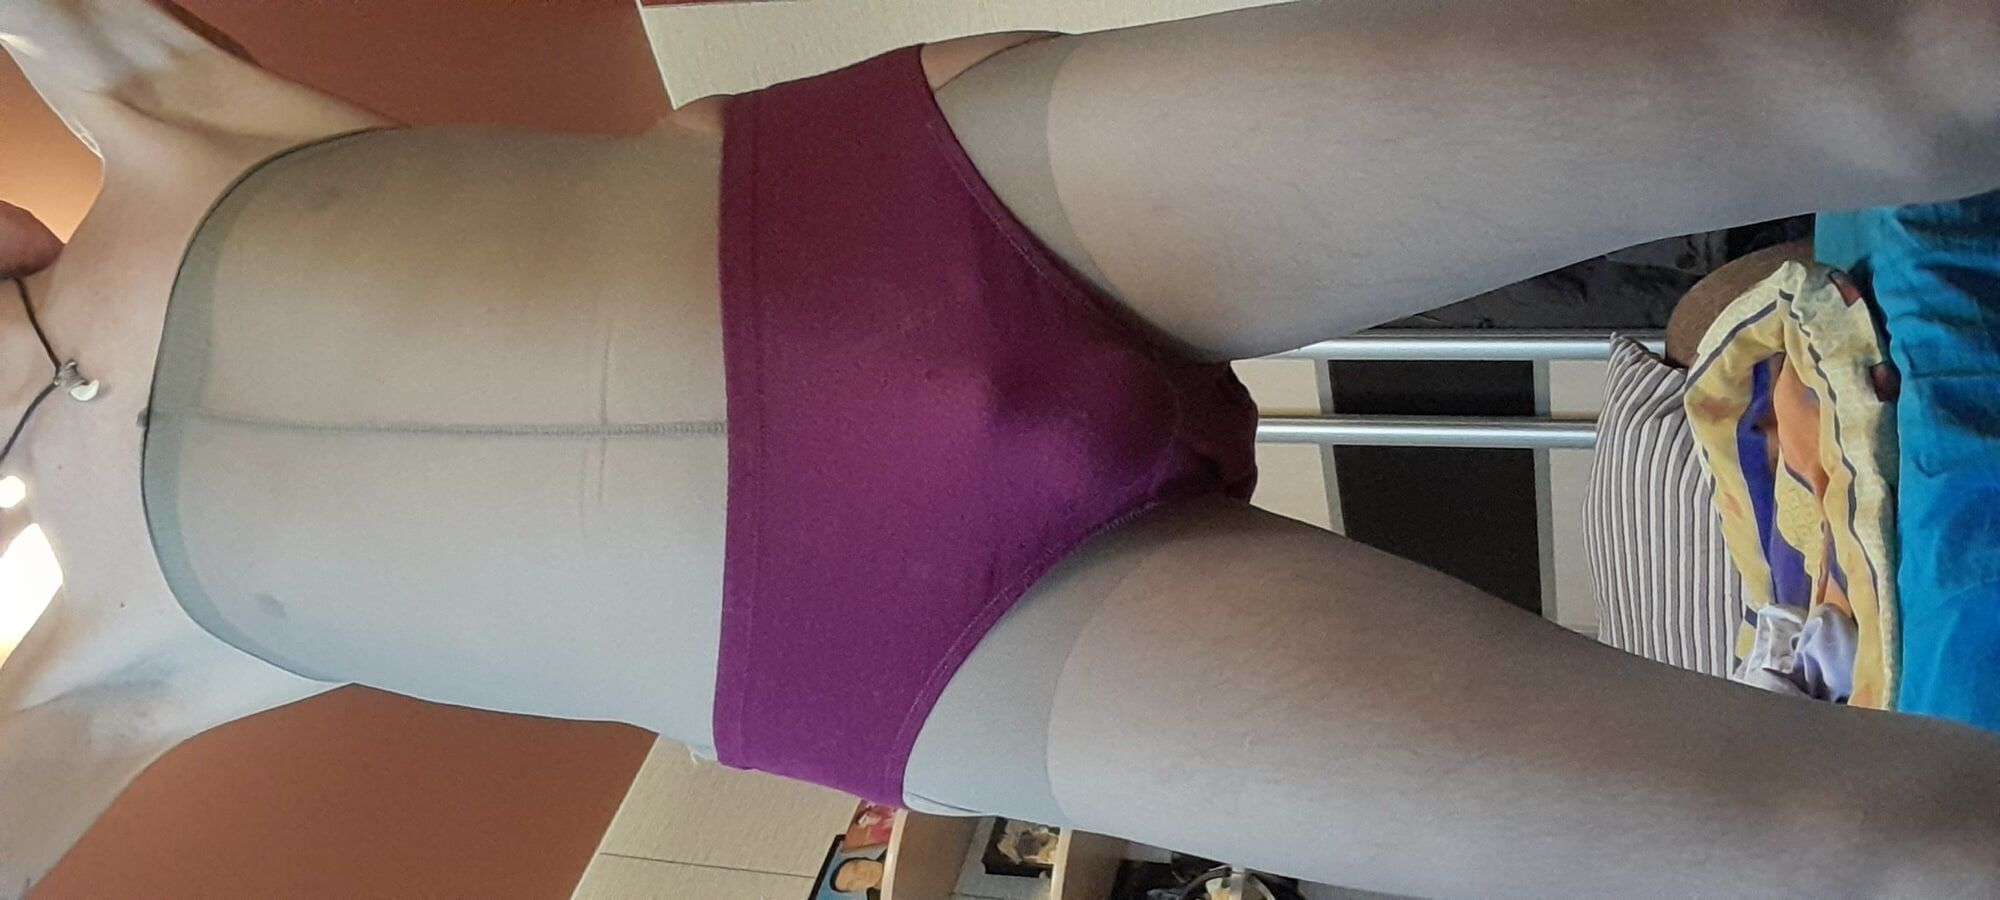 My new panties #3